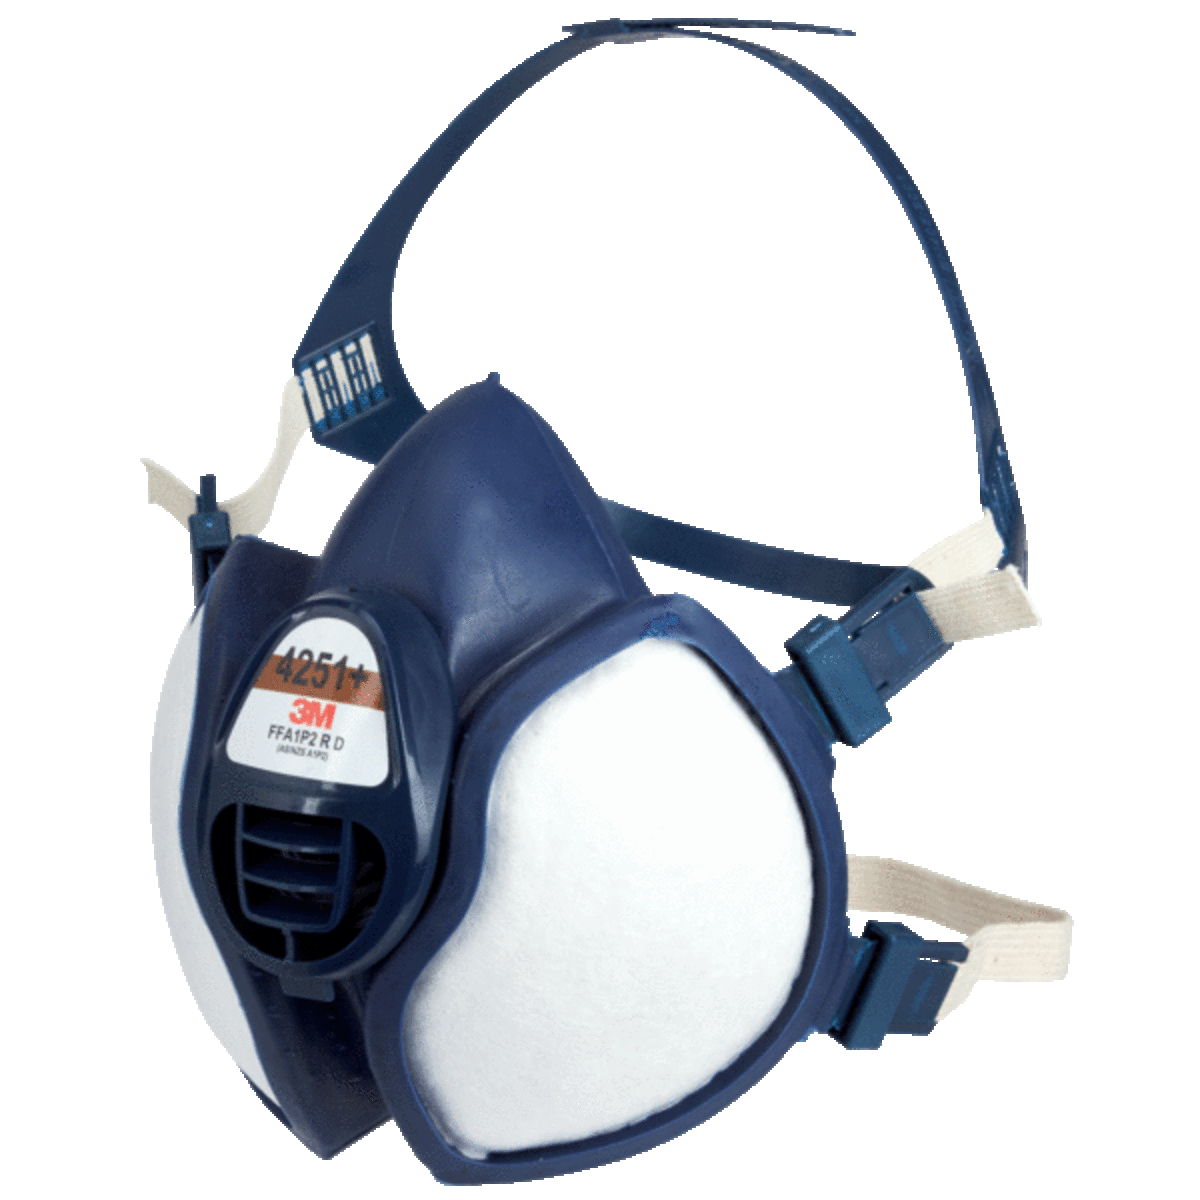 Masque respiratoire jetable Série 4000+ - A1P2 3M 4000+